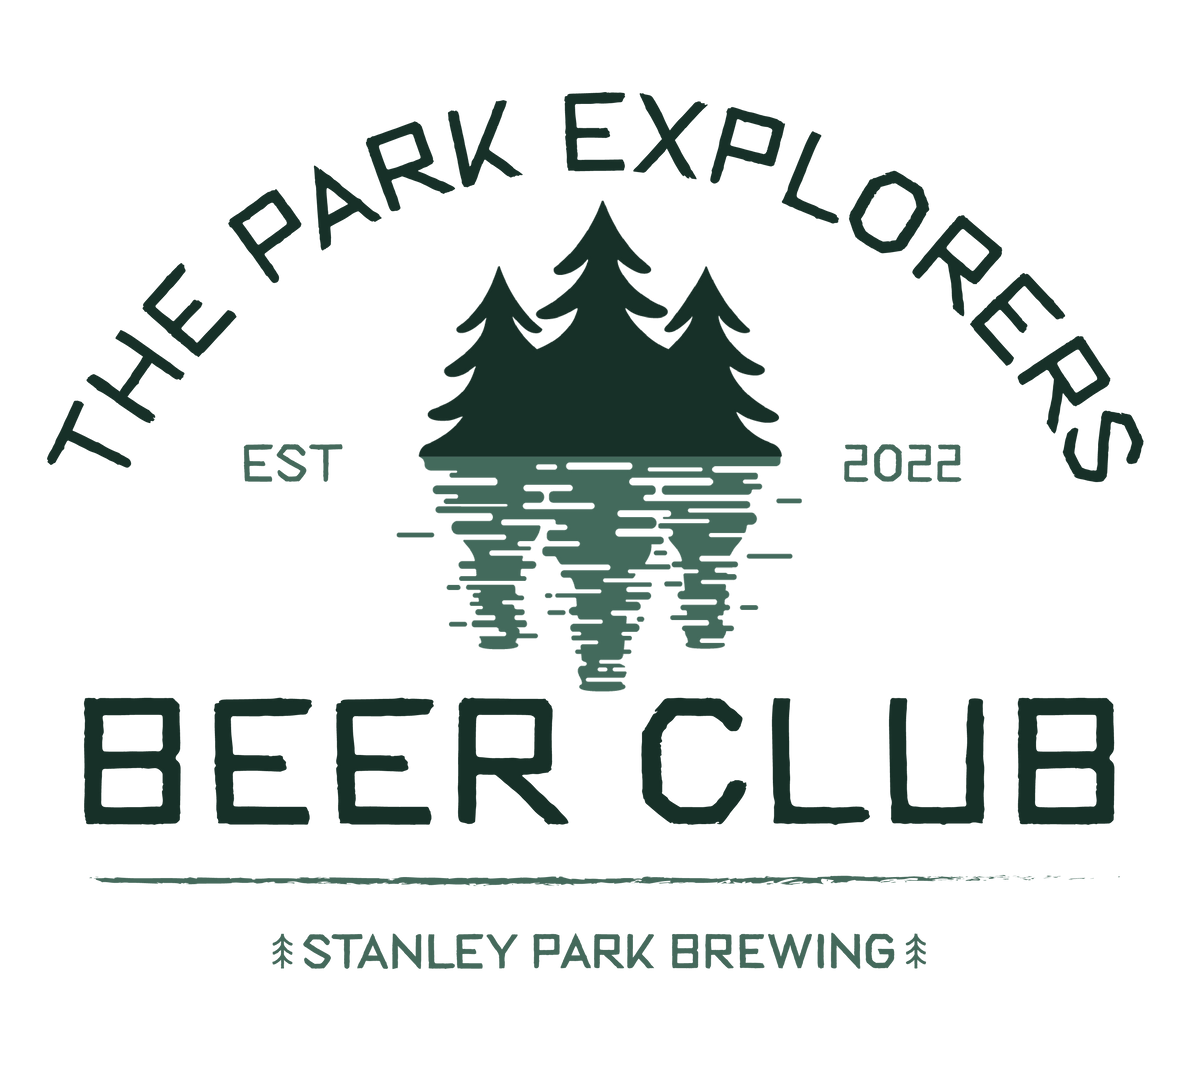 Park Explorers Beer Club